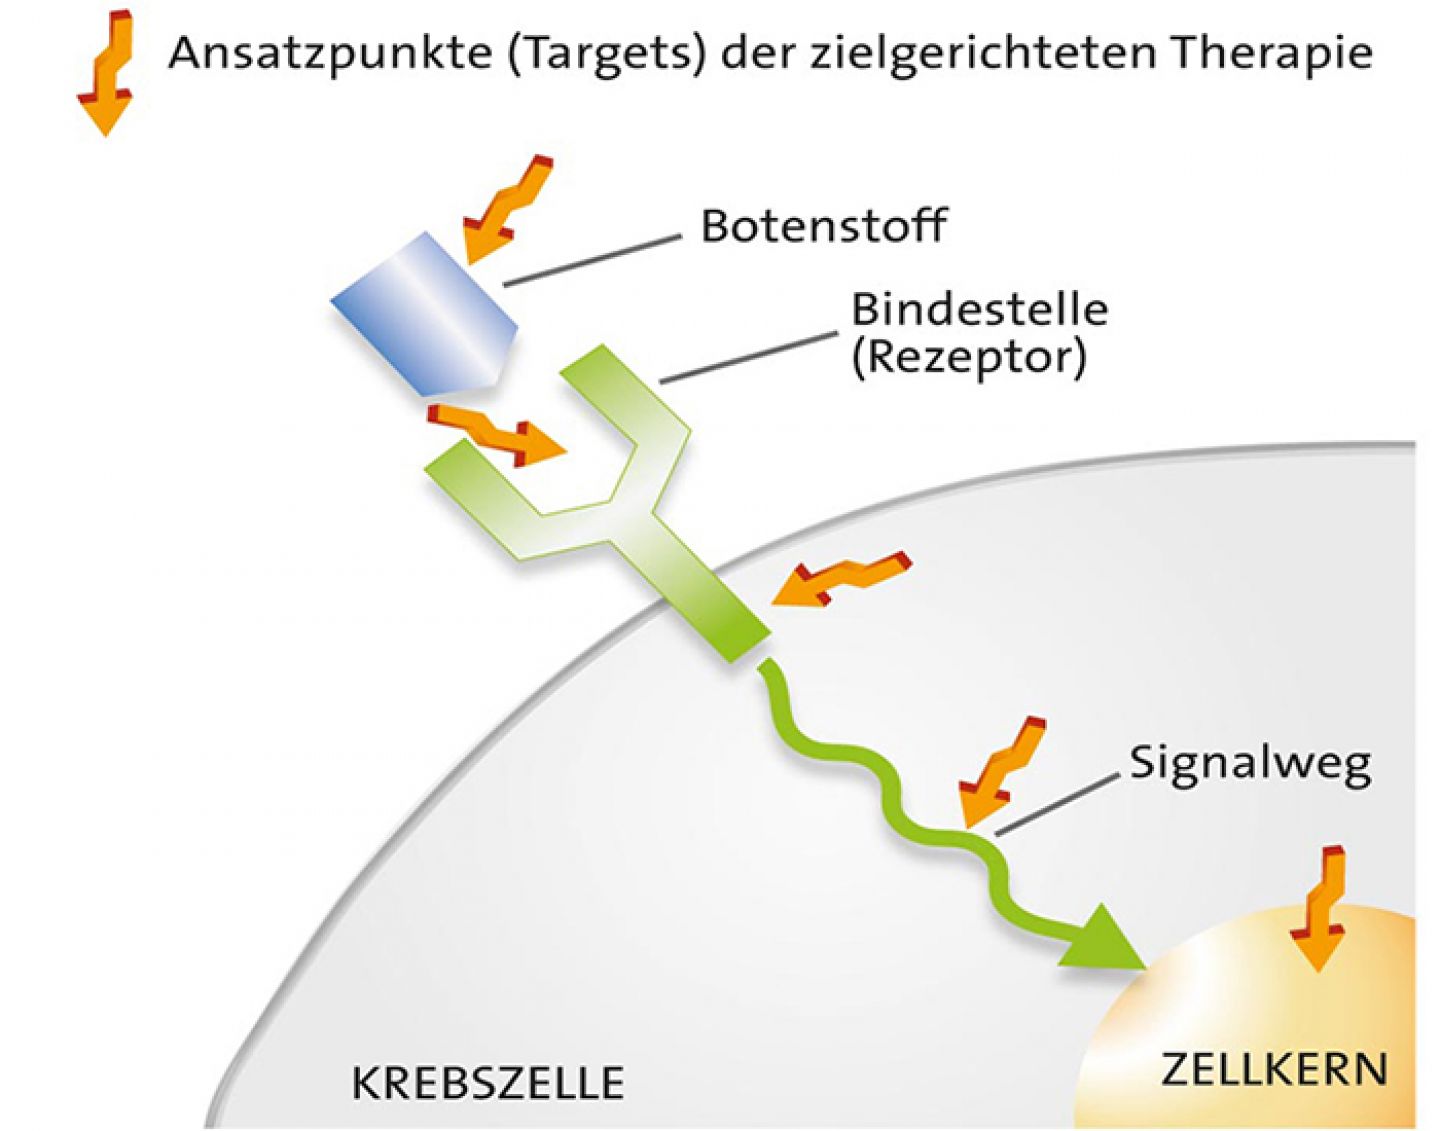 Angriffspunkte von zielgerichteten Krebstherapien © Krebsinformationsdienst, Deutsches Krebsforschungszentrum